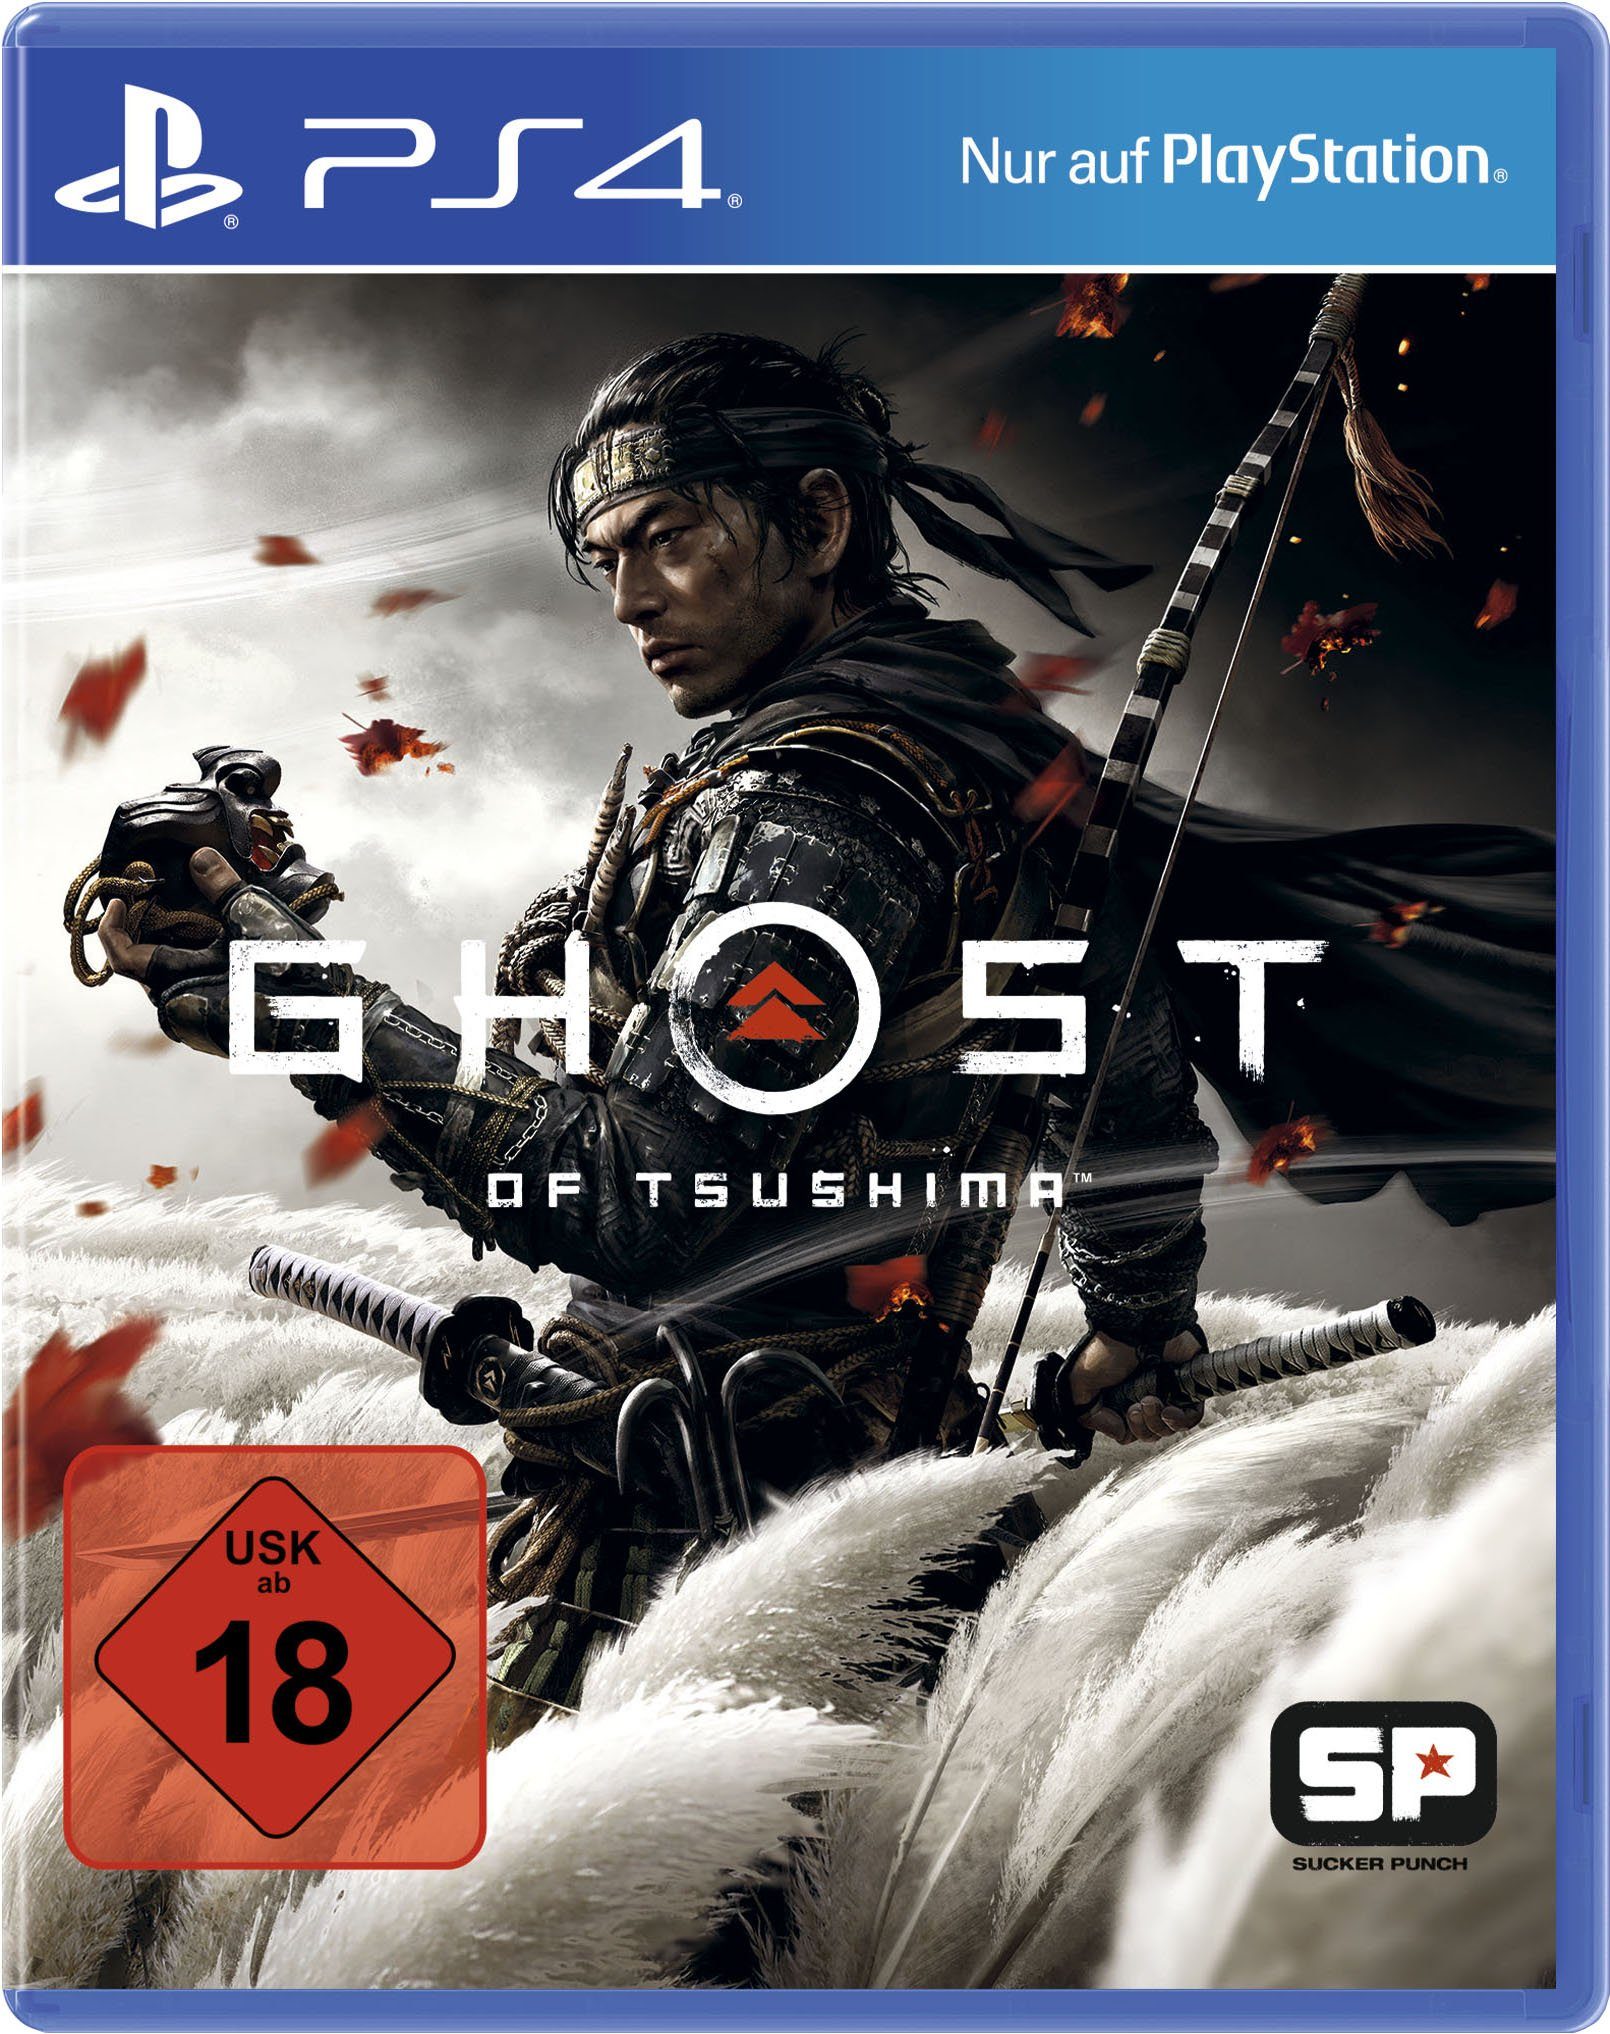 PlayStation 4 of Ghost Tsushima